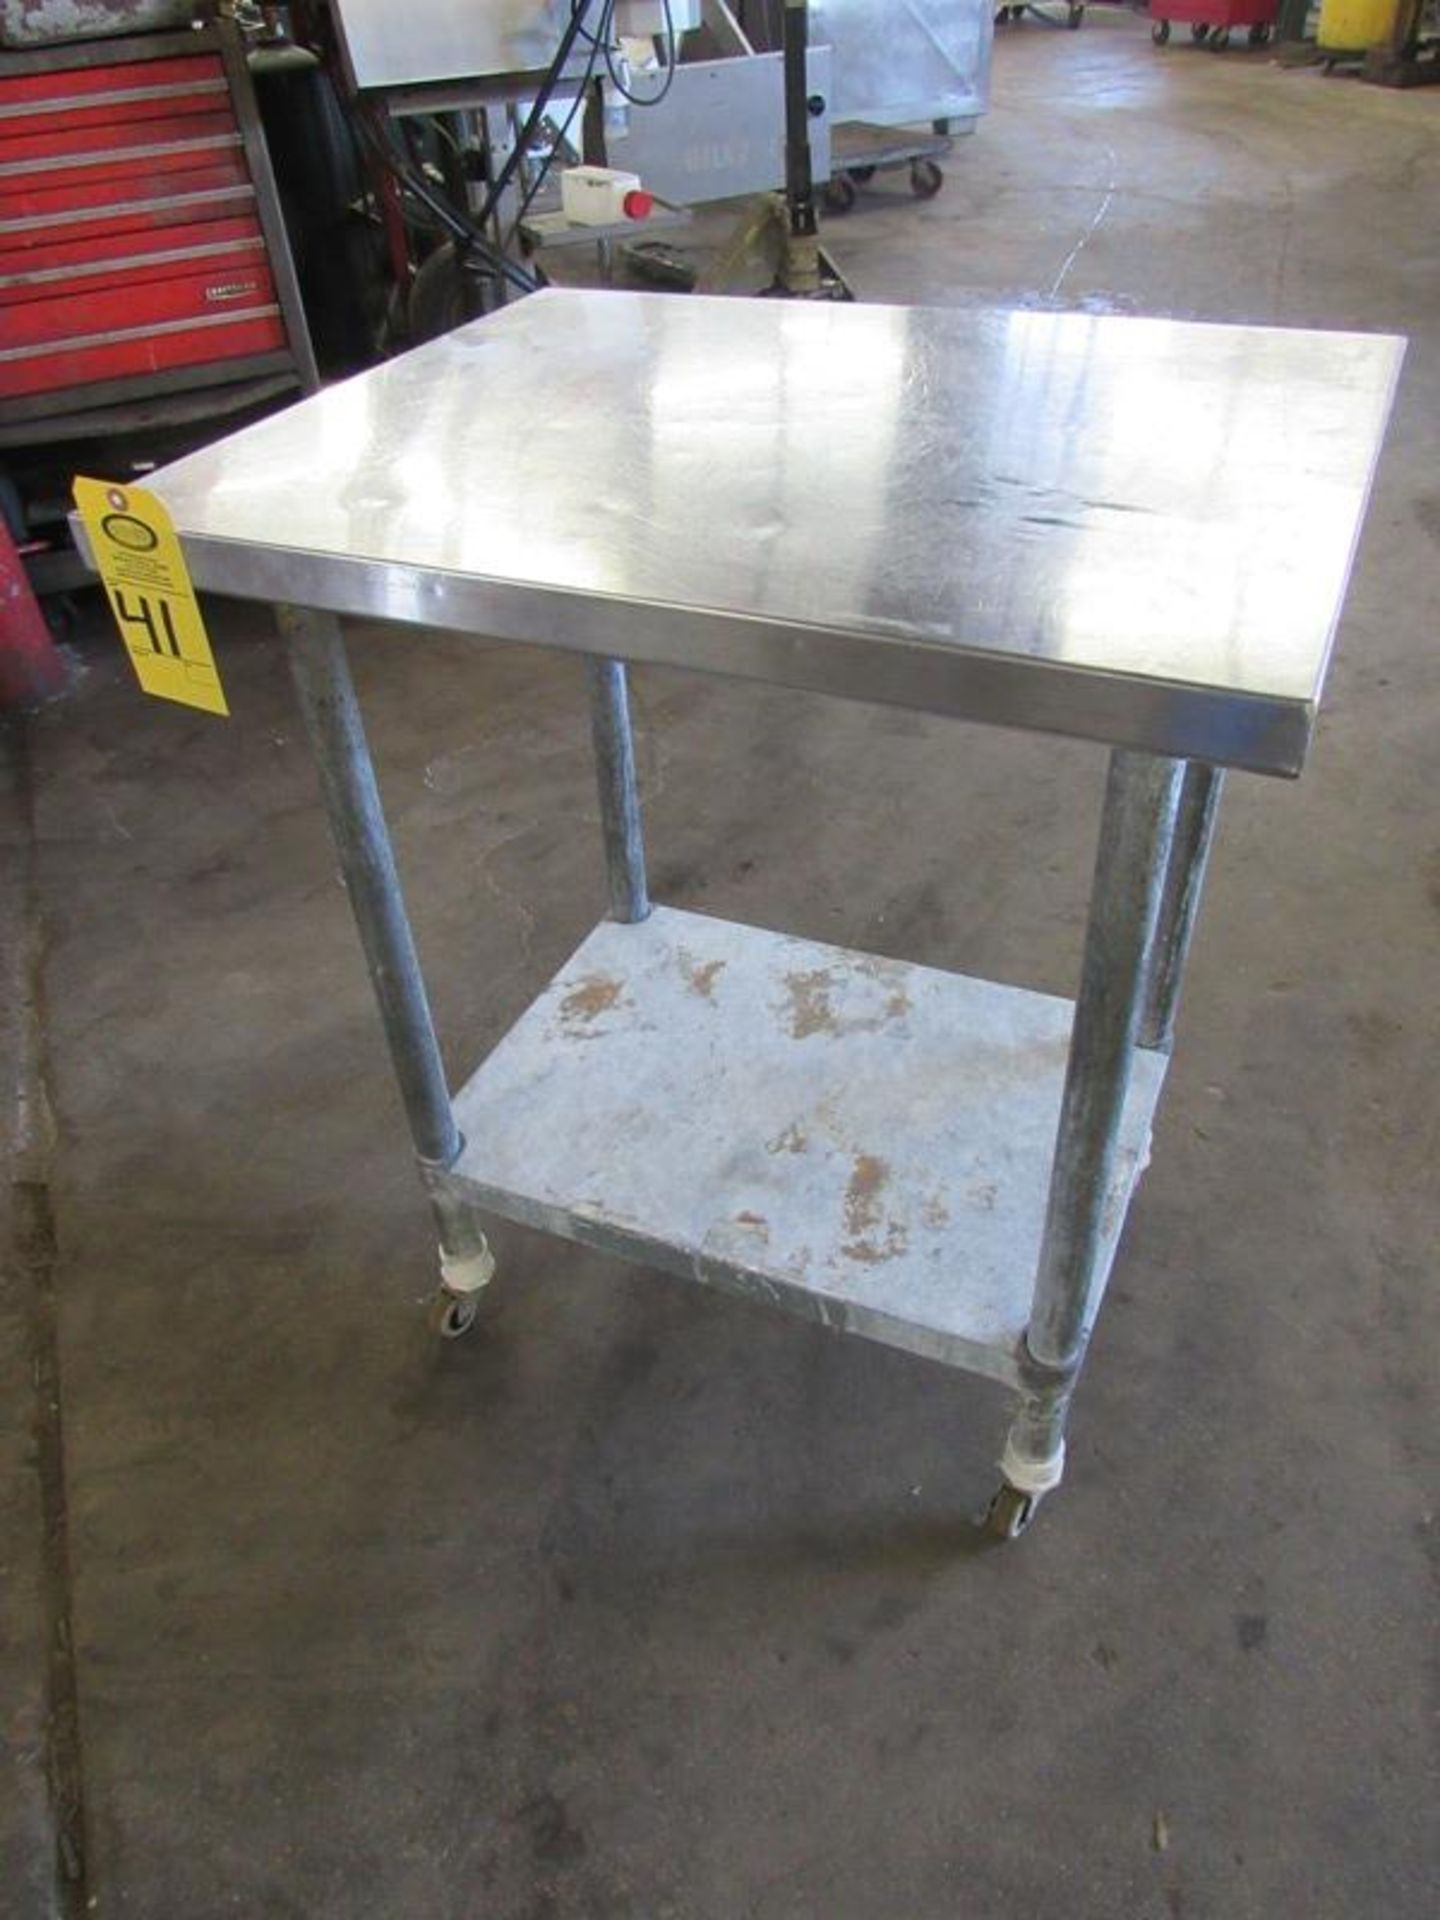 Portable Stainless Steel Table, 24" W X 30" L, steel legs/bottom shelf